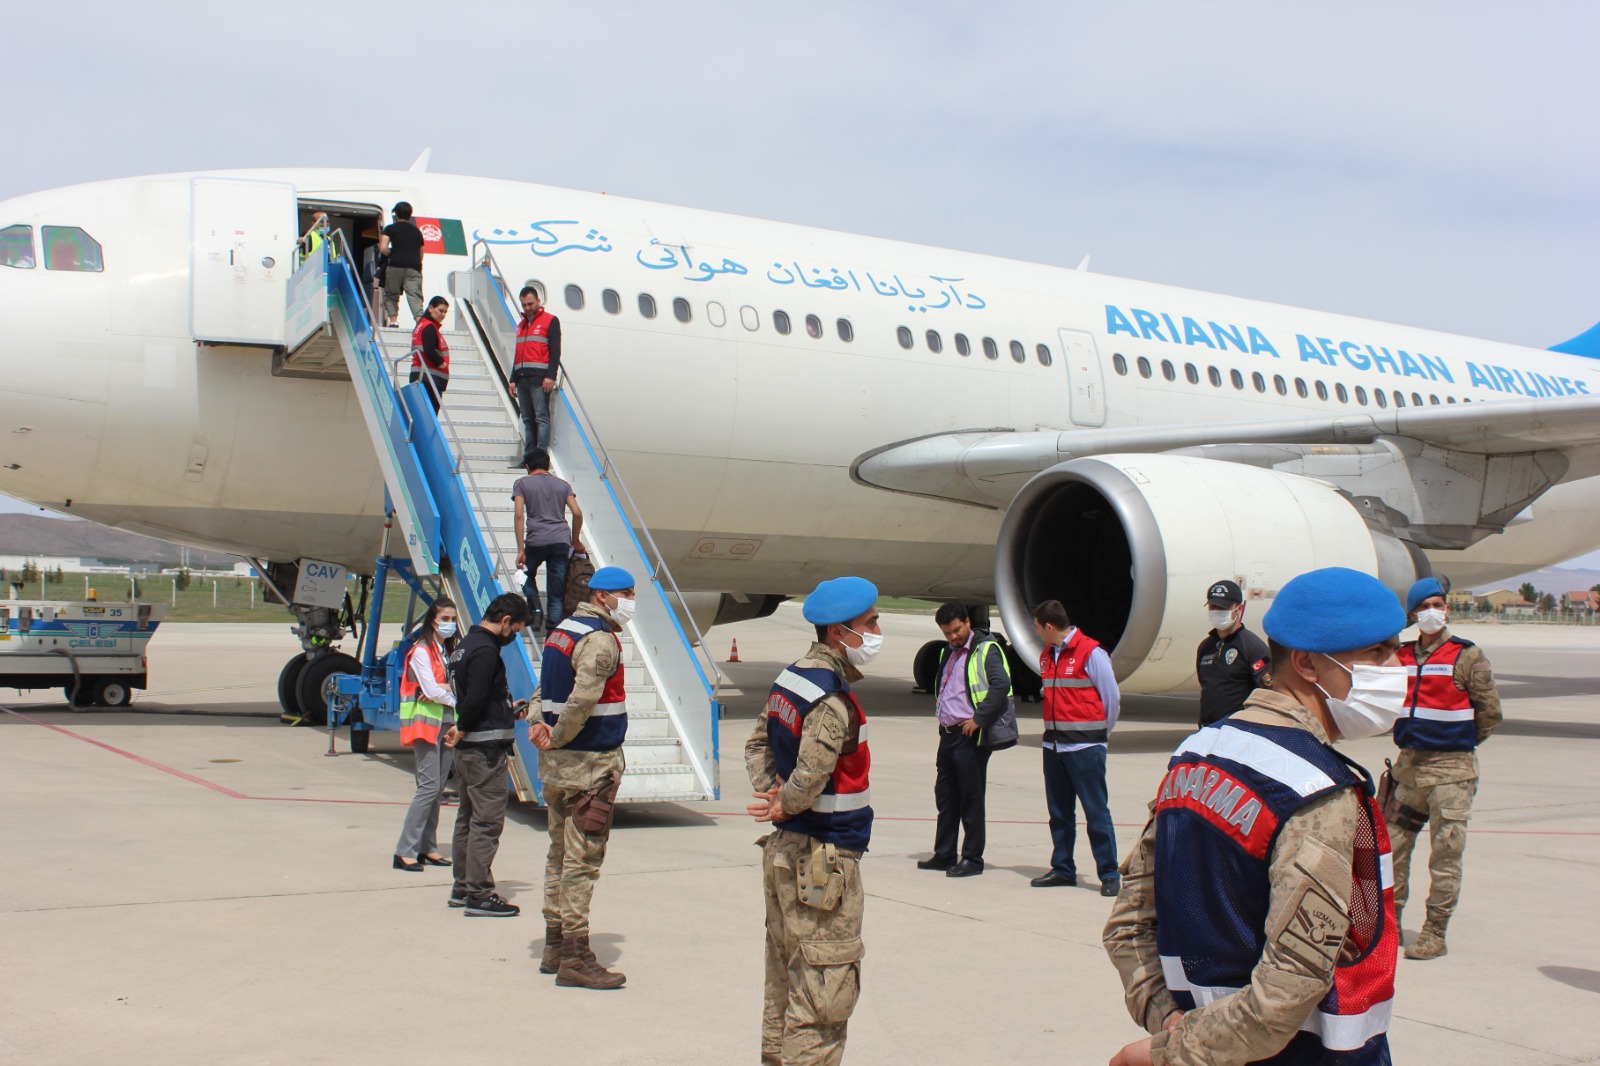 Malatya'dan Afganistan uyruklu 227 kaçak ülkelerine uçakla gönderildi. Aylarca yürüyerek  ülkeye giriş yapan Afganlılar, ülkelerine VİP  hizmeti alarak uçakla gönderildi.